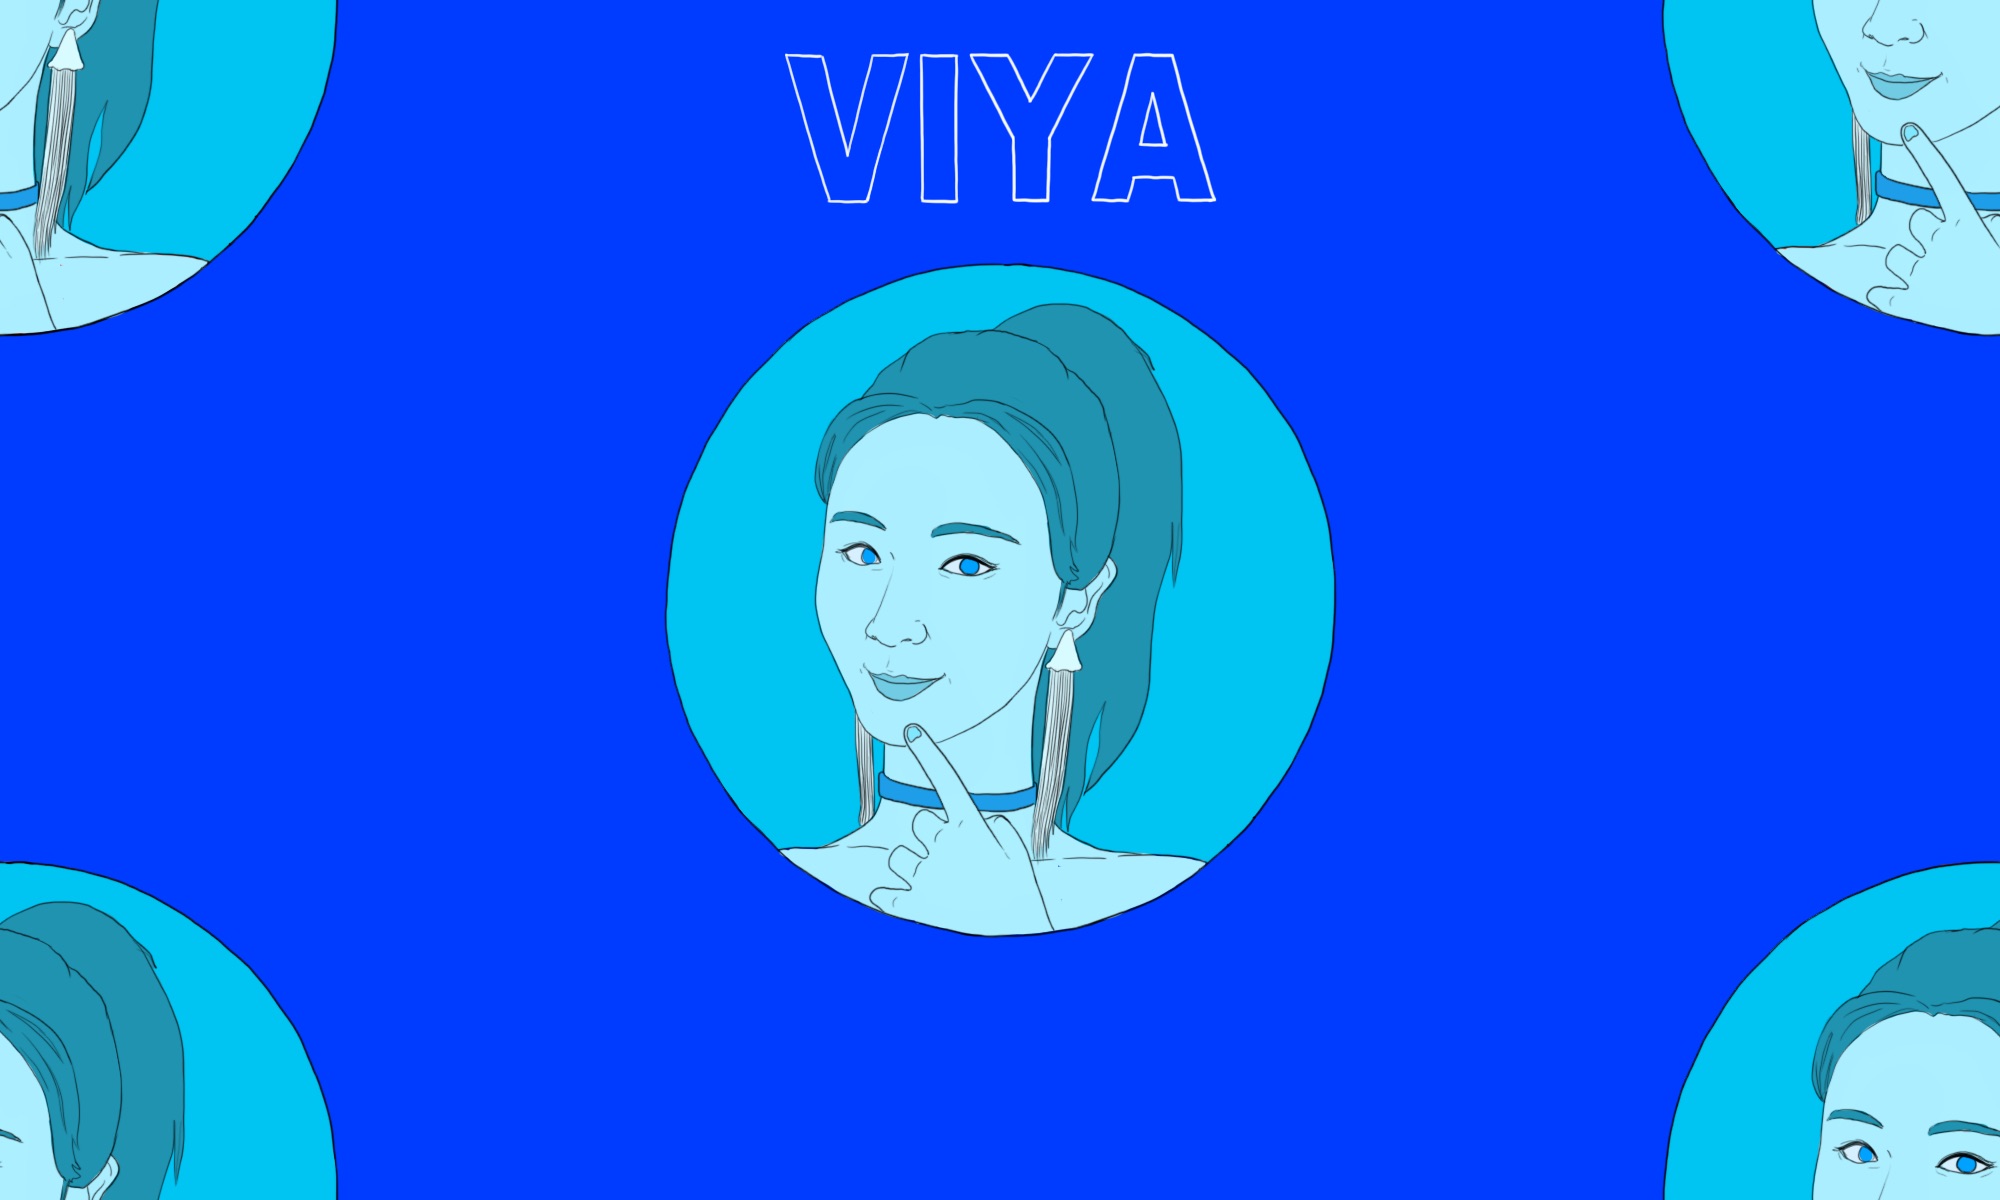 Derek Zheng illustration of Viya China's ecommerce livestreamer